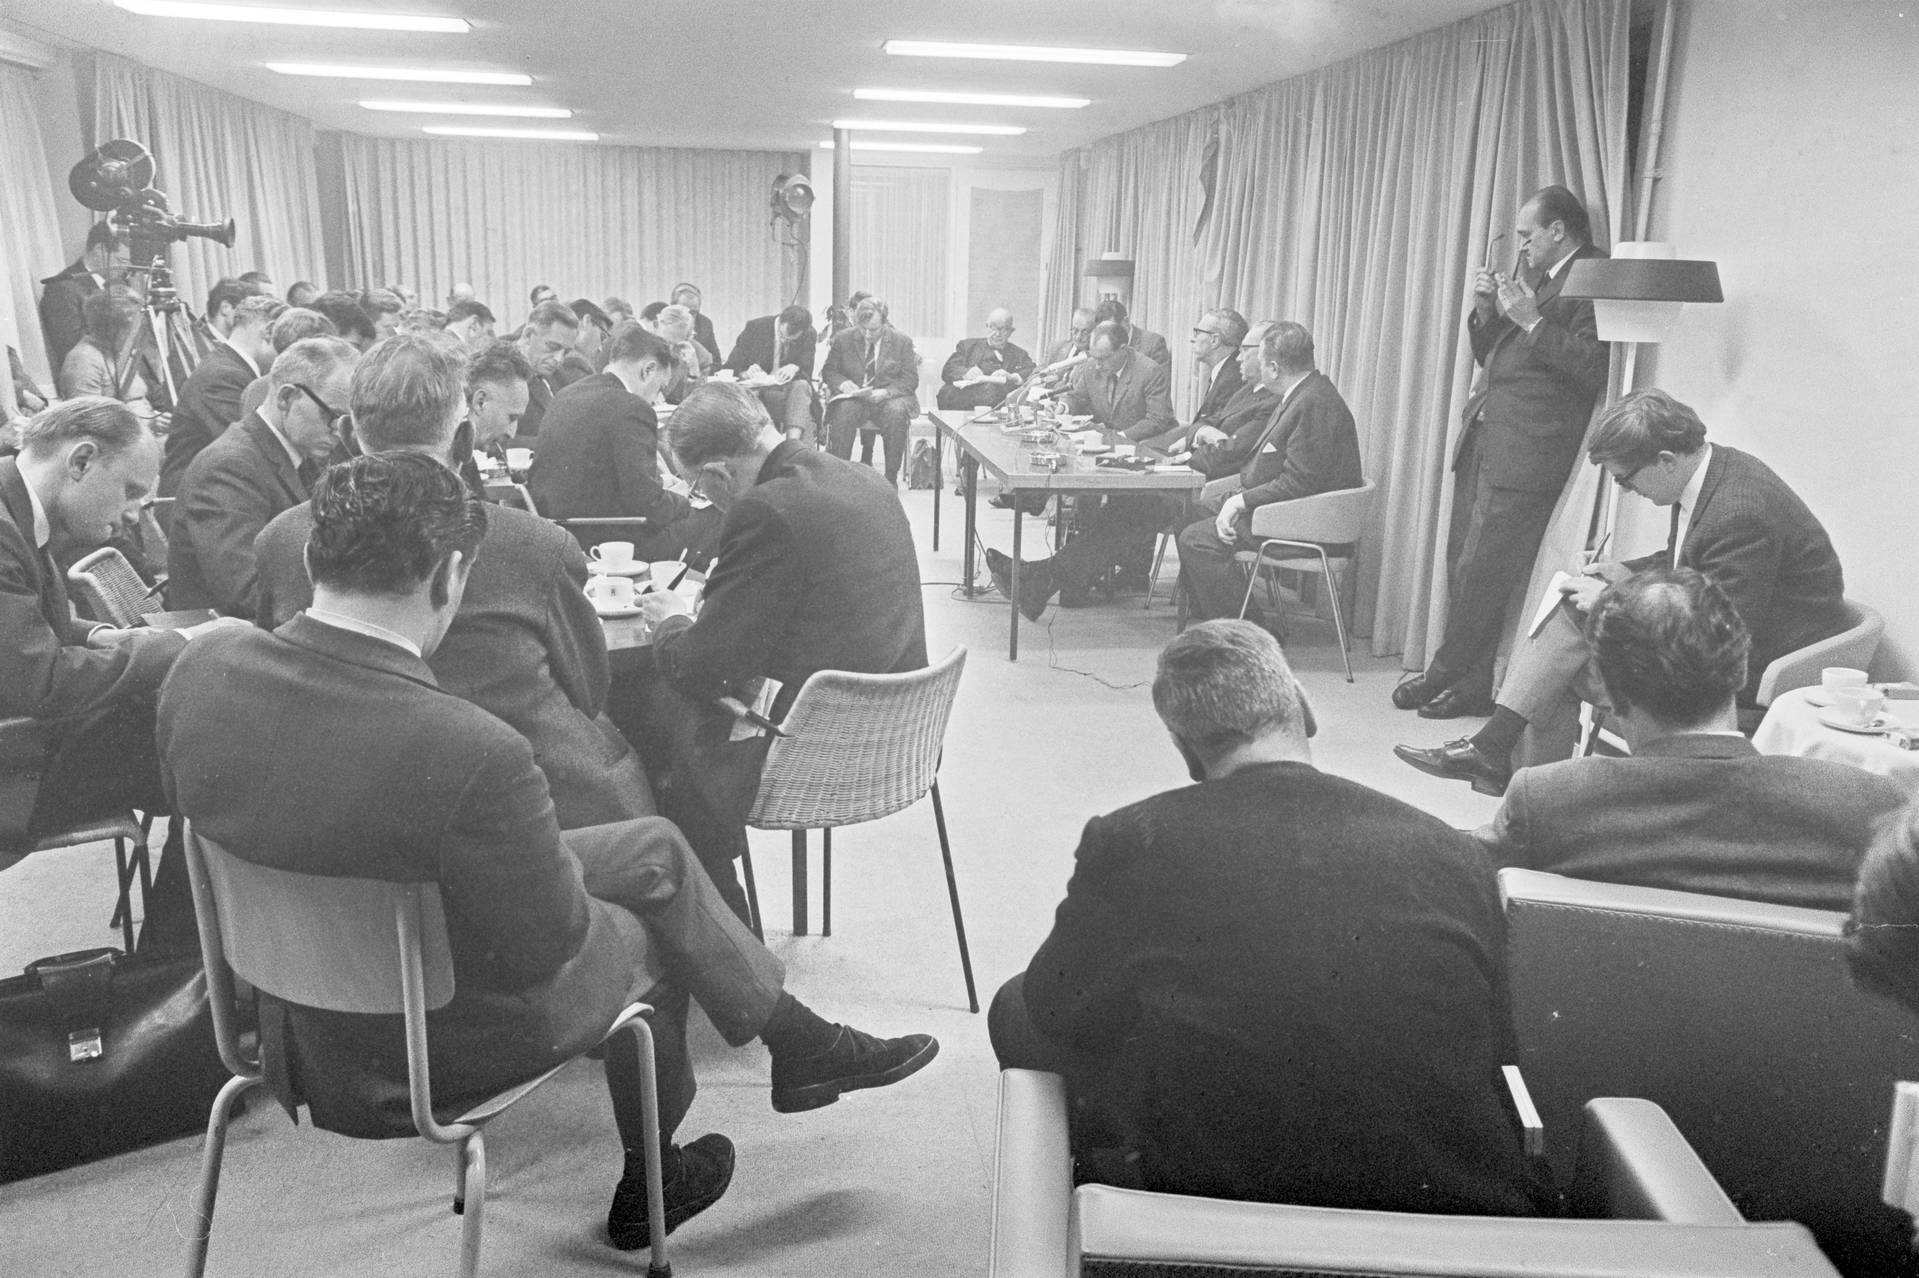 Het oude perscentrum Nieuwspoort tijdens de persconferentie van 21 november 1966, waarop premier Jelle Zijlstra het nieuwe kabinet bekendmaakte. Foto: Jacques Klok, ANP.